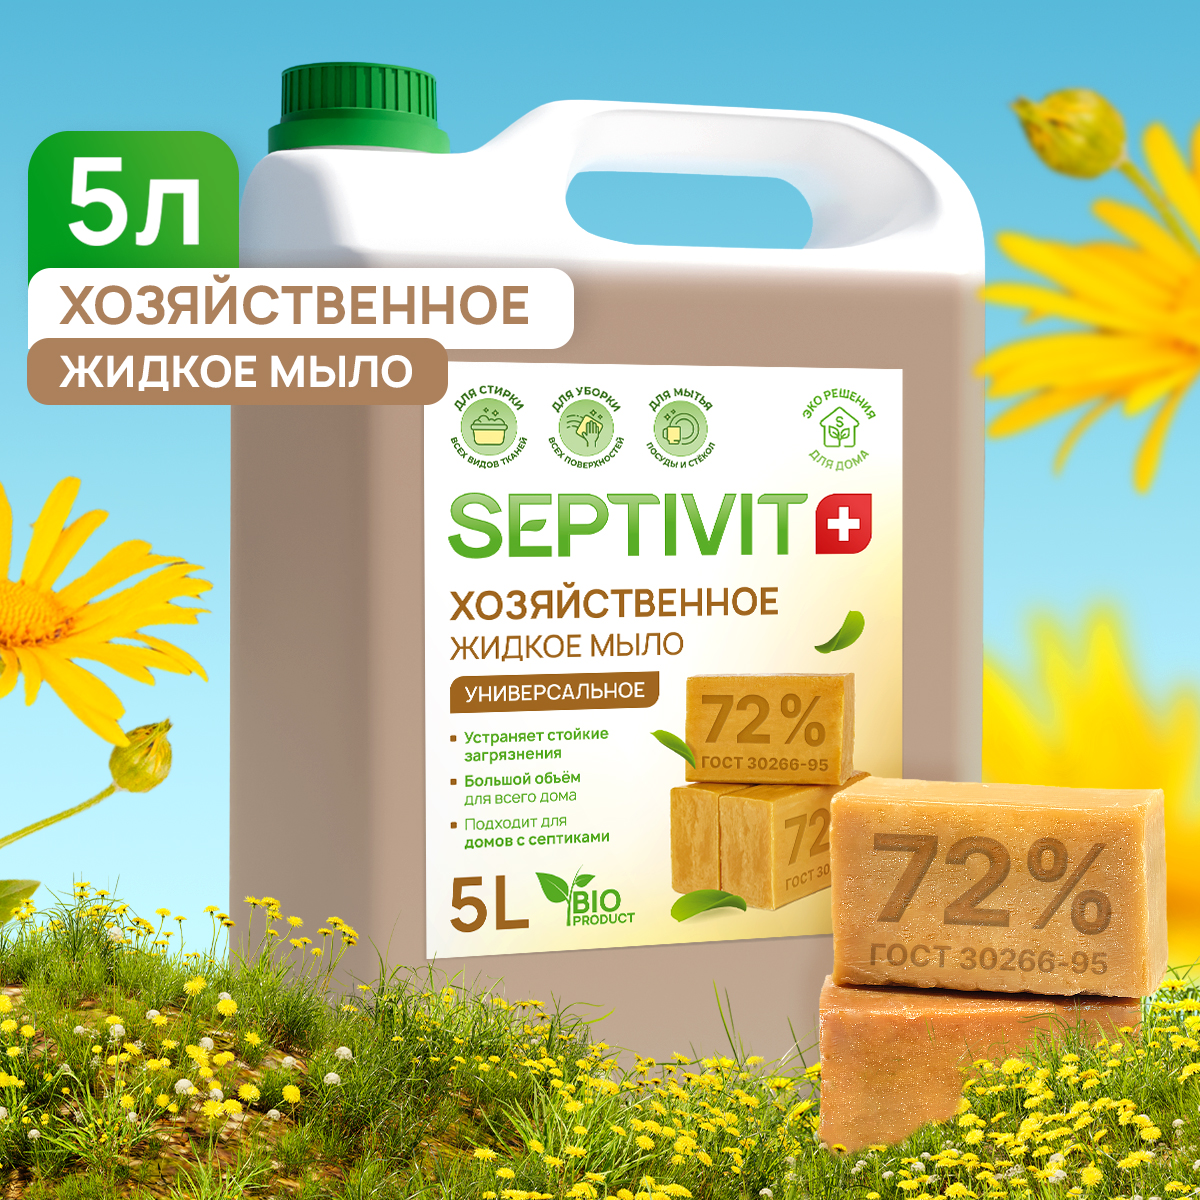 Хозяйственное мыло Septivit Premium 5л